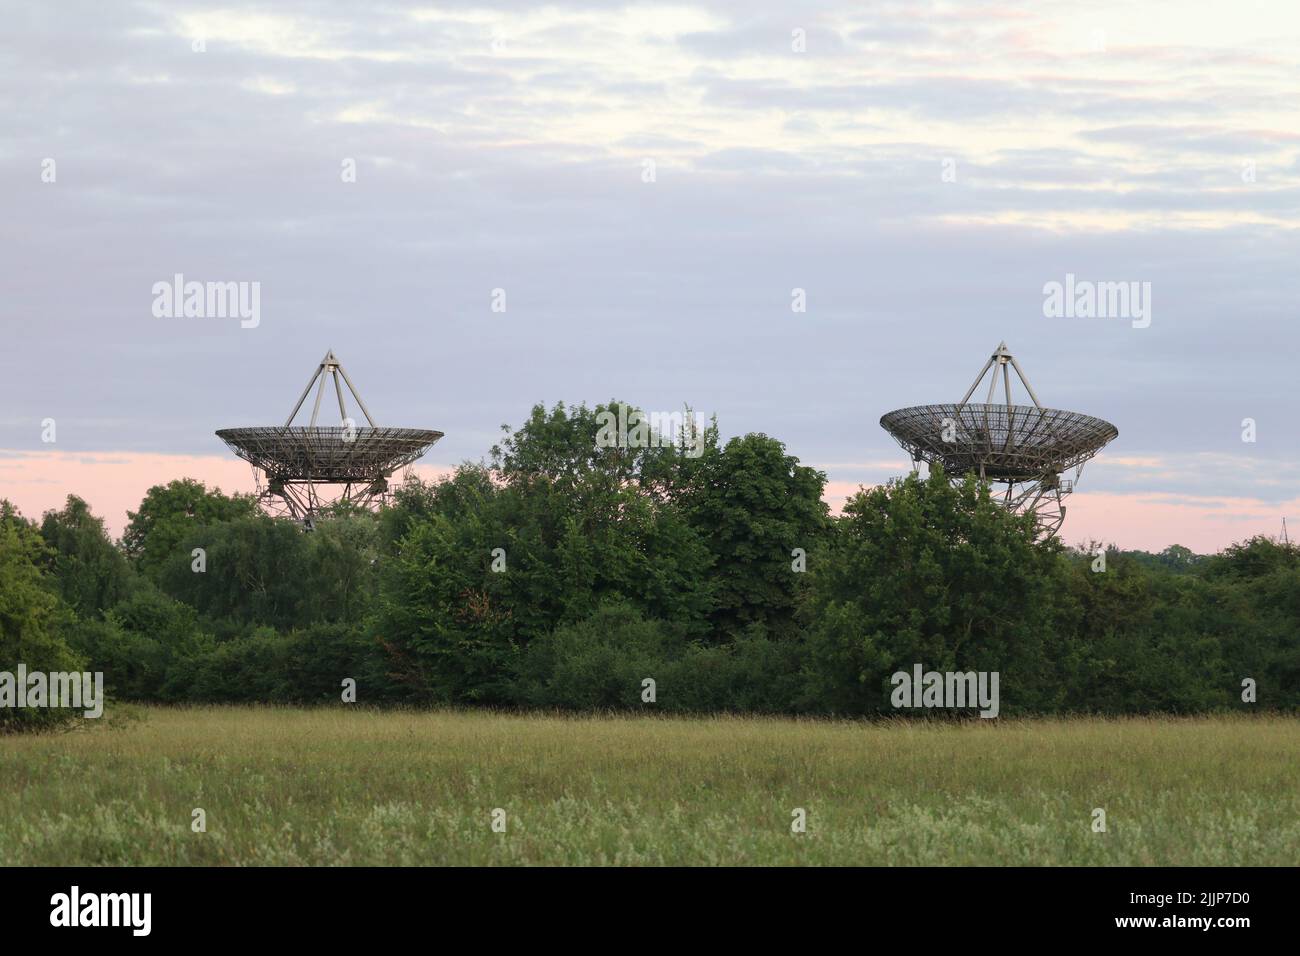 Due delle antenne telescopiche da un miglio sono viste insieme dietro una fila di alberi al Mullard radio Astronomy Observatory di Cambridge Foto Stock